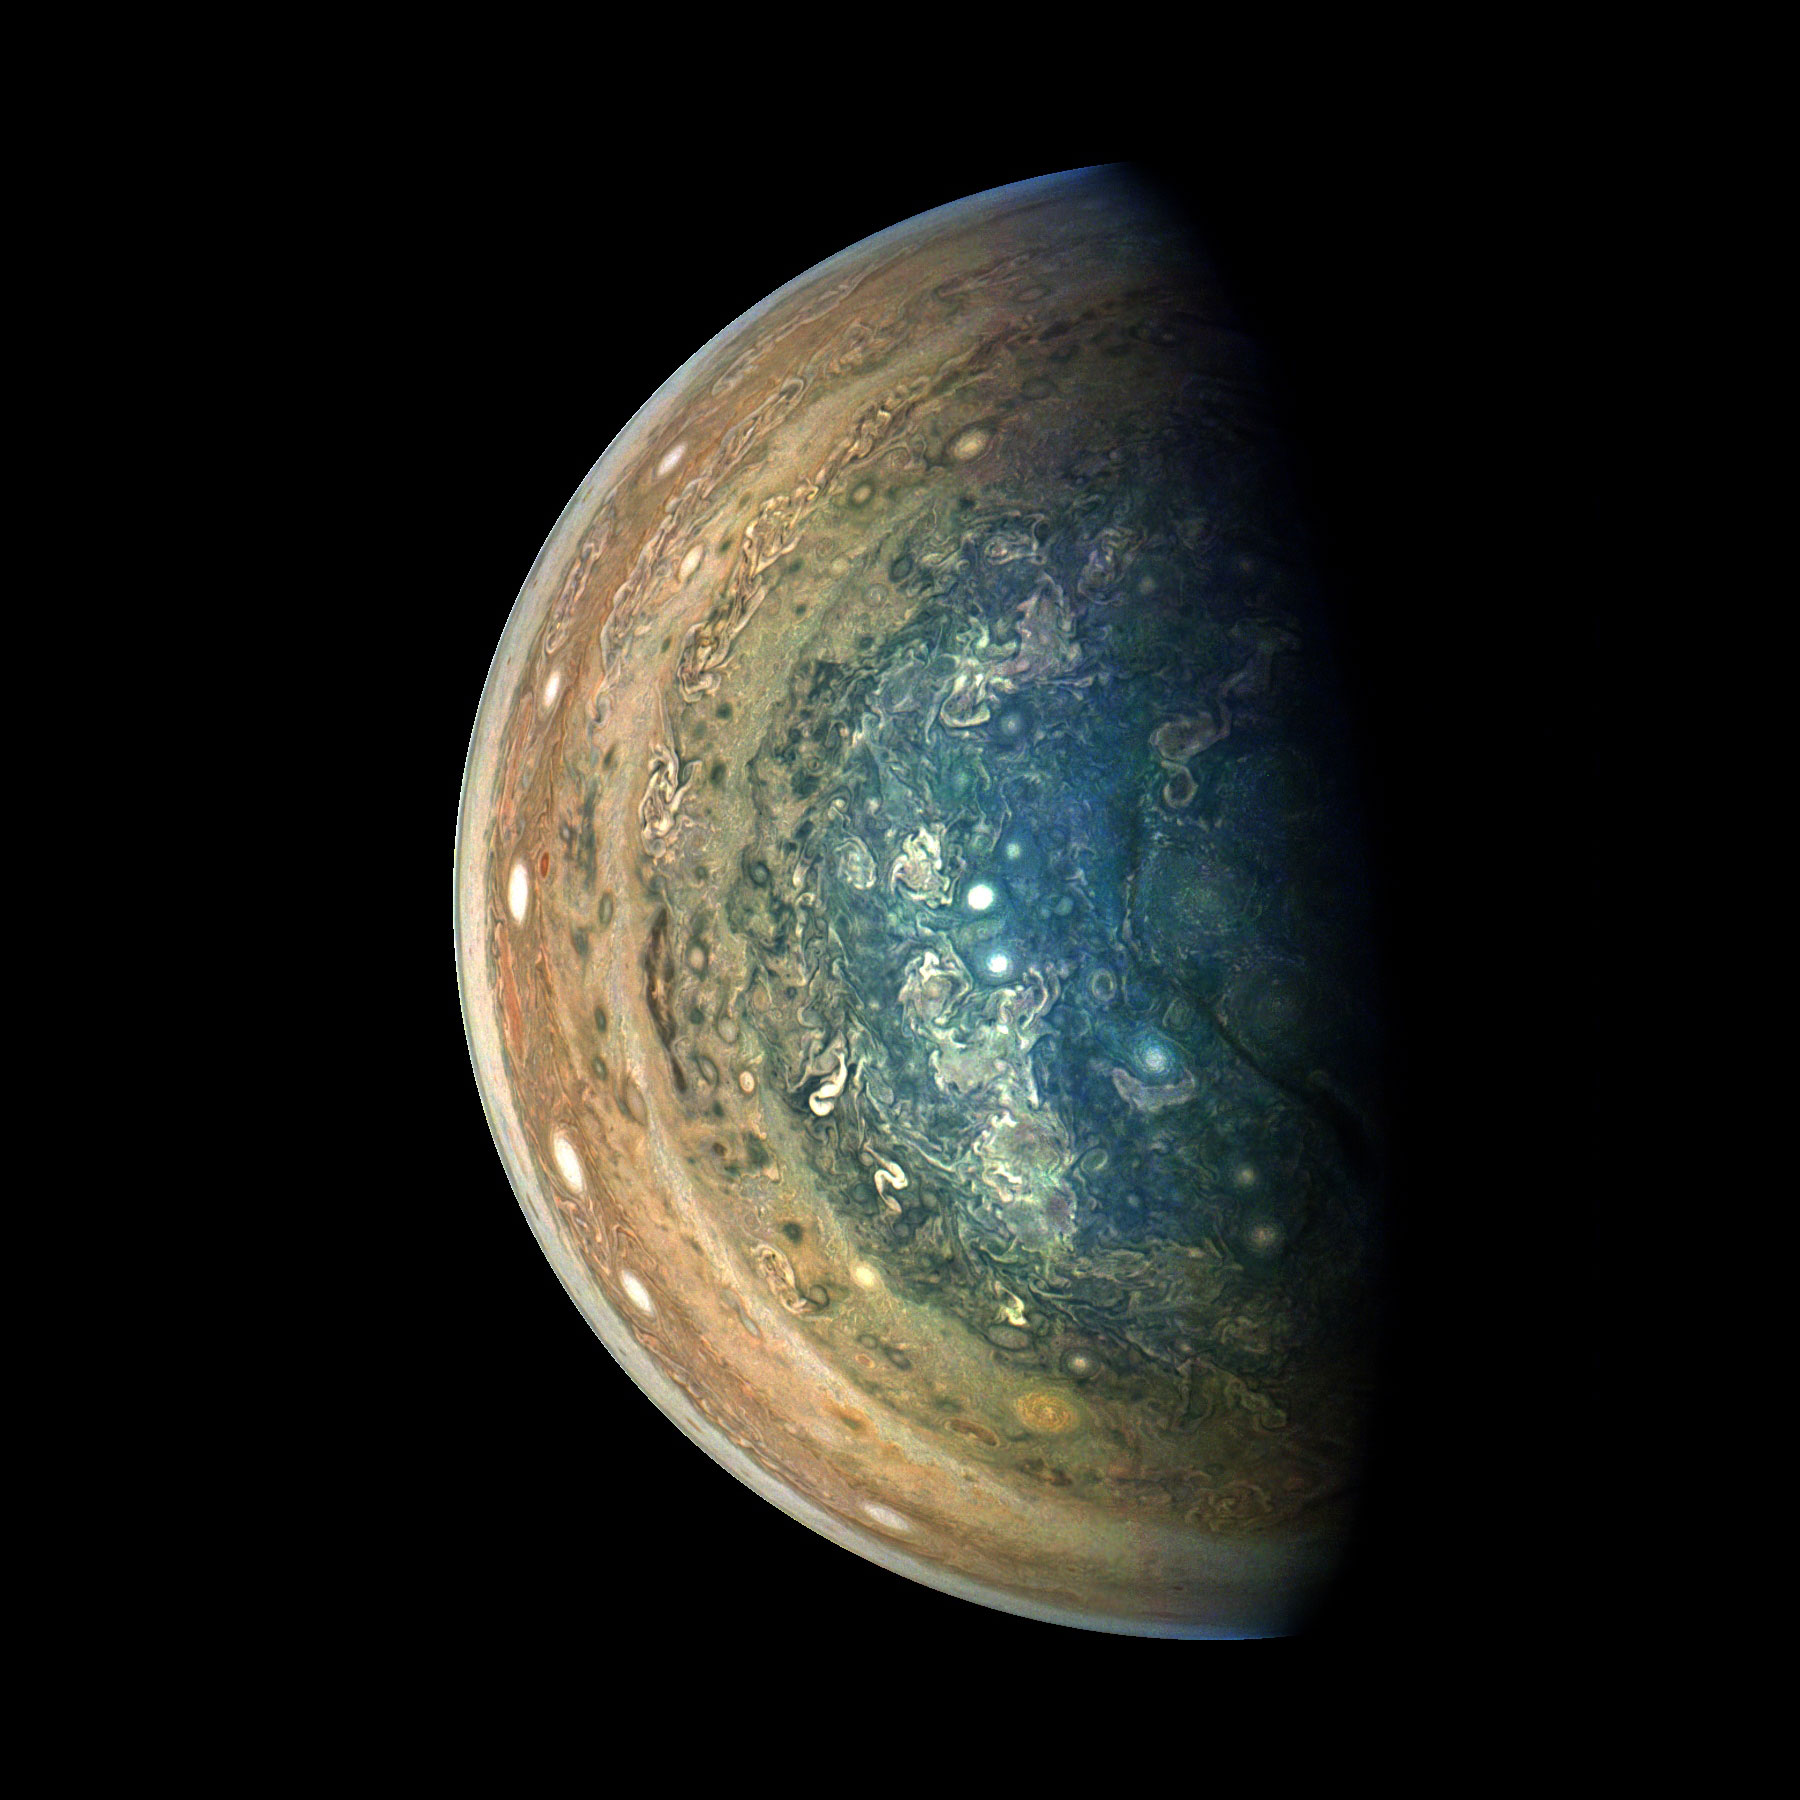 18 01 19 木星の南極を真上から撮影した最新画像 Nasaの木星探査機ジュノーの最新画像と情報を翻訳